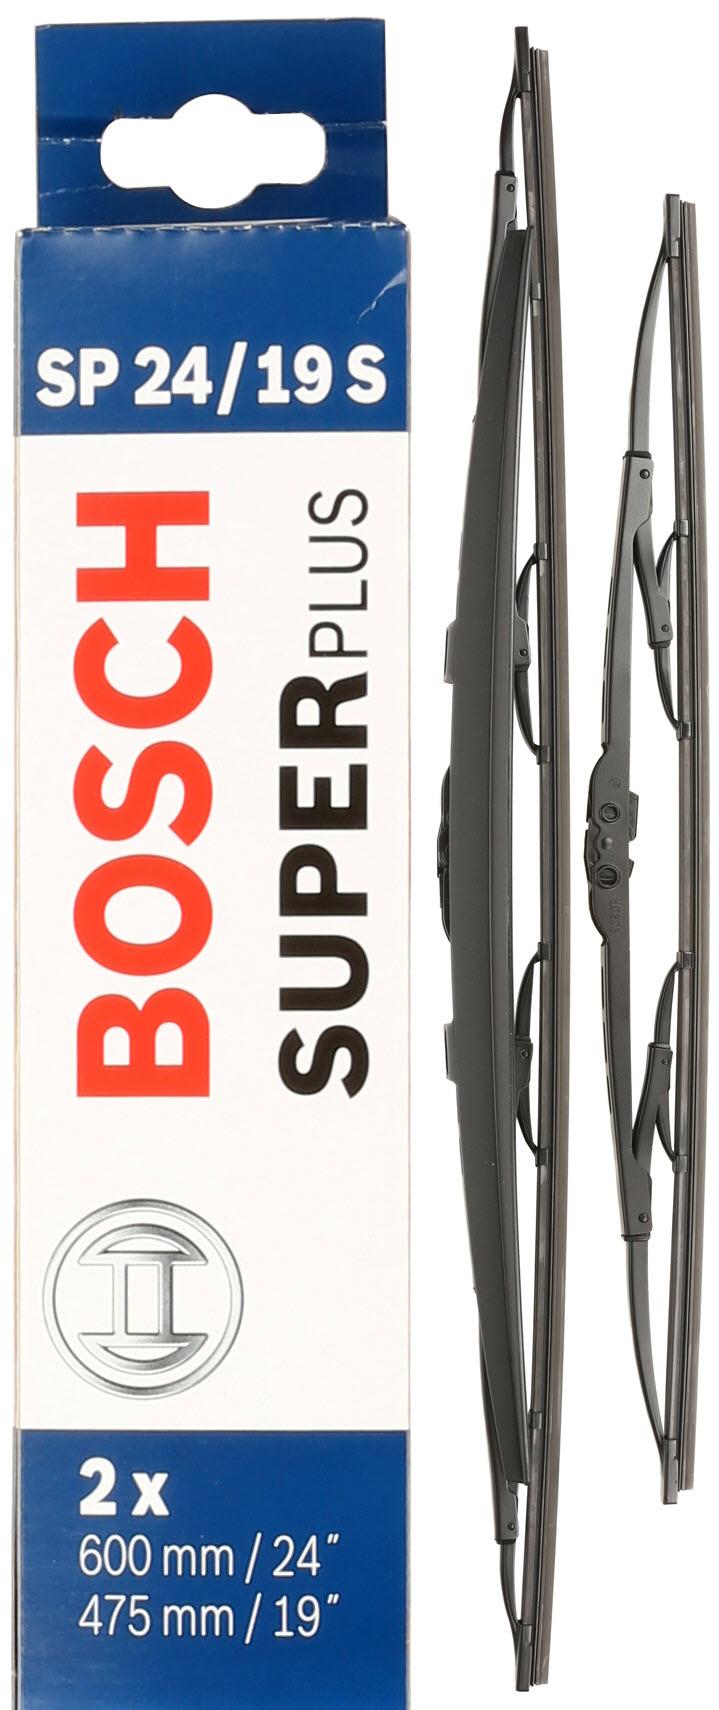 Bosch Sp24/19S Wiper Blades - Front Pair